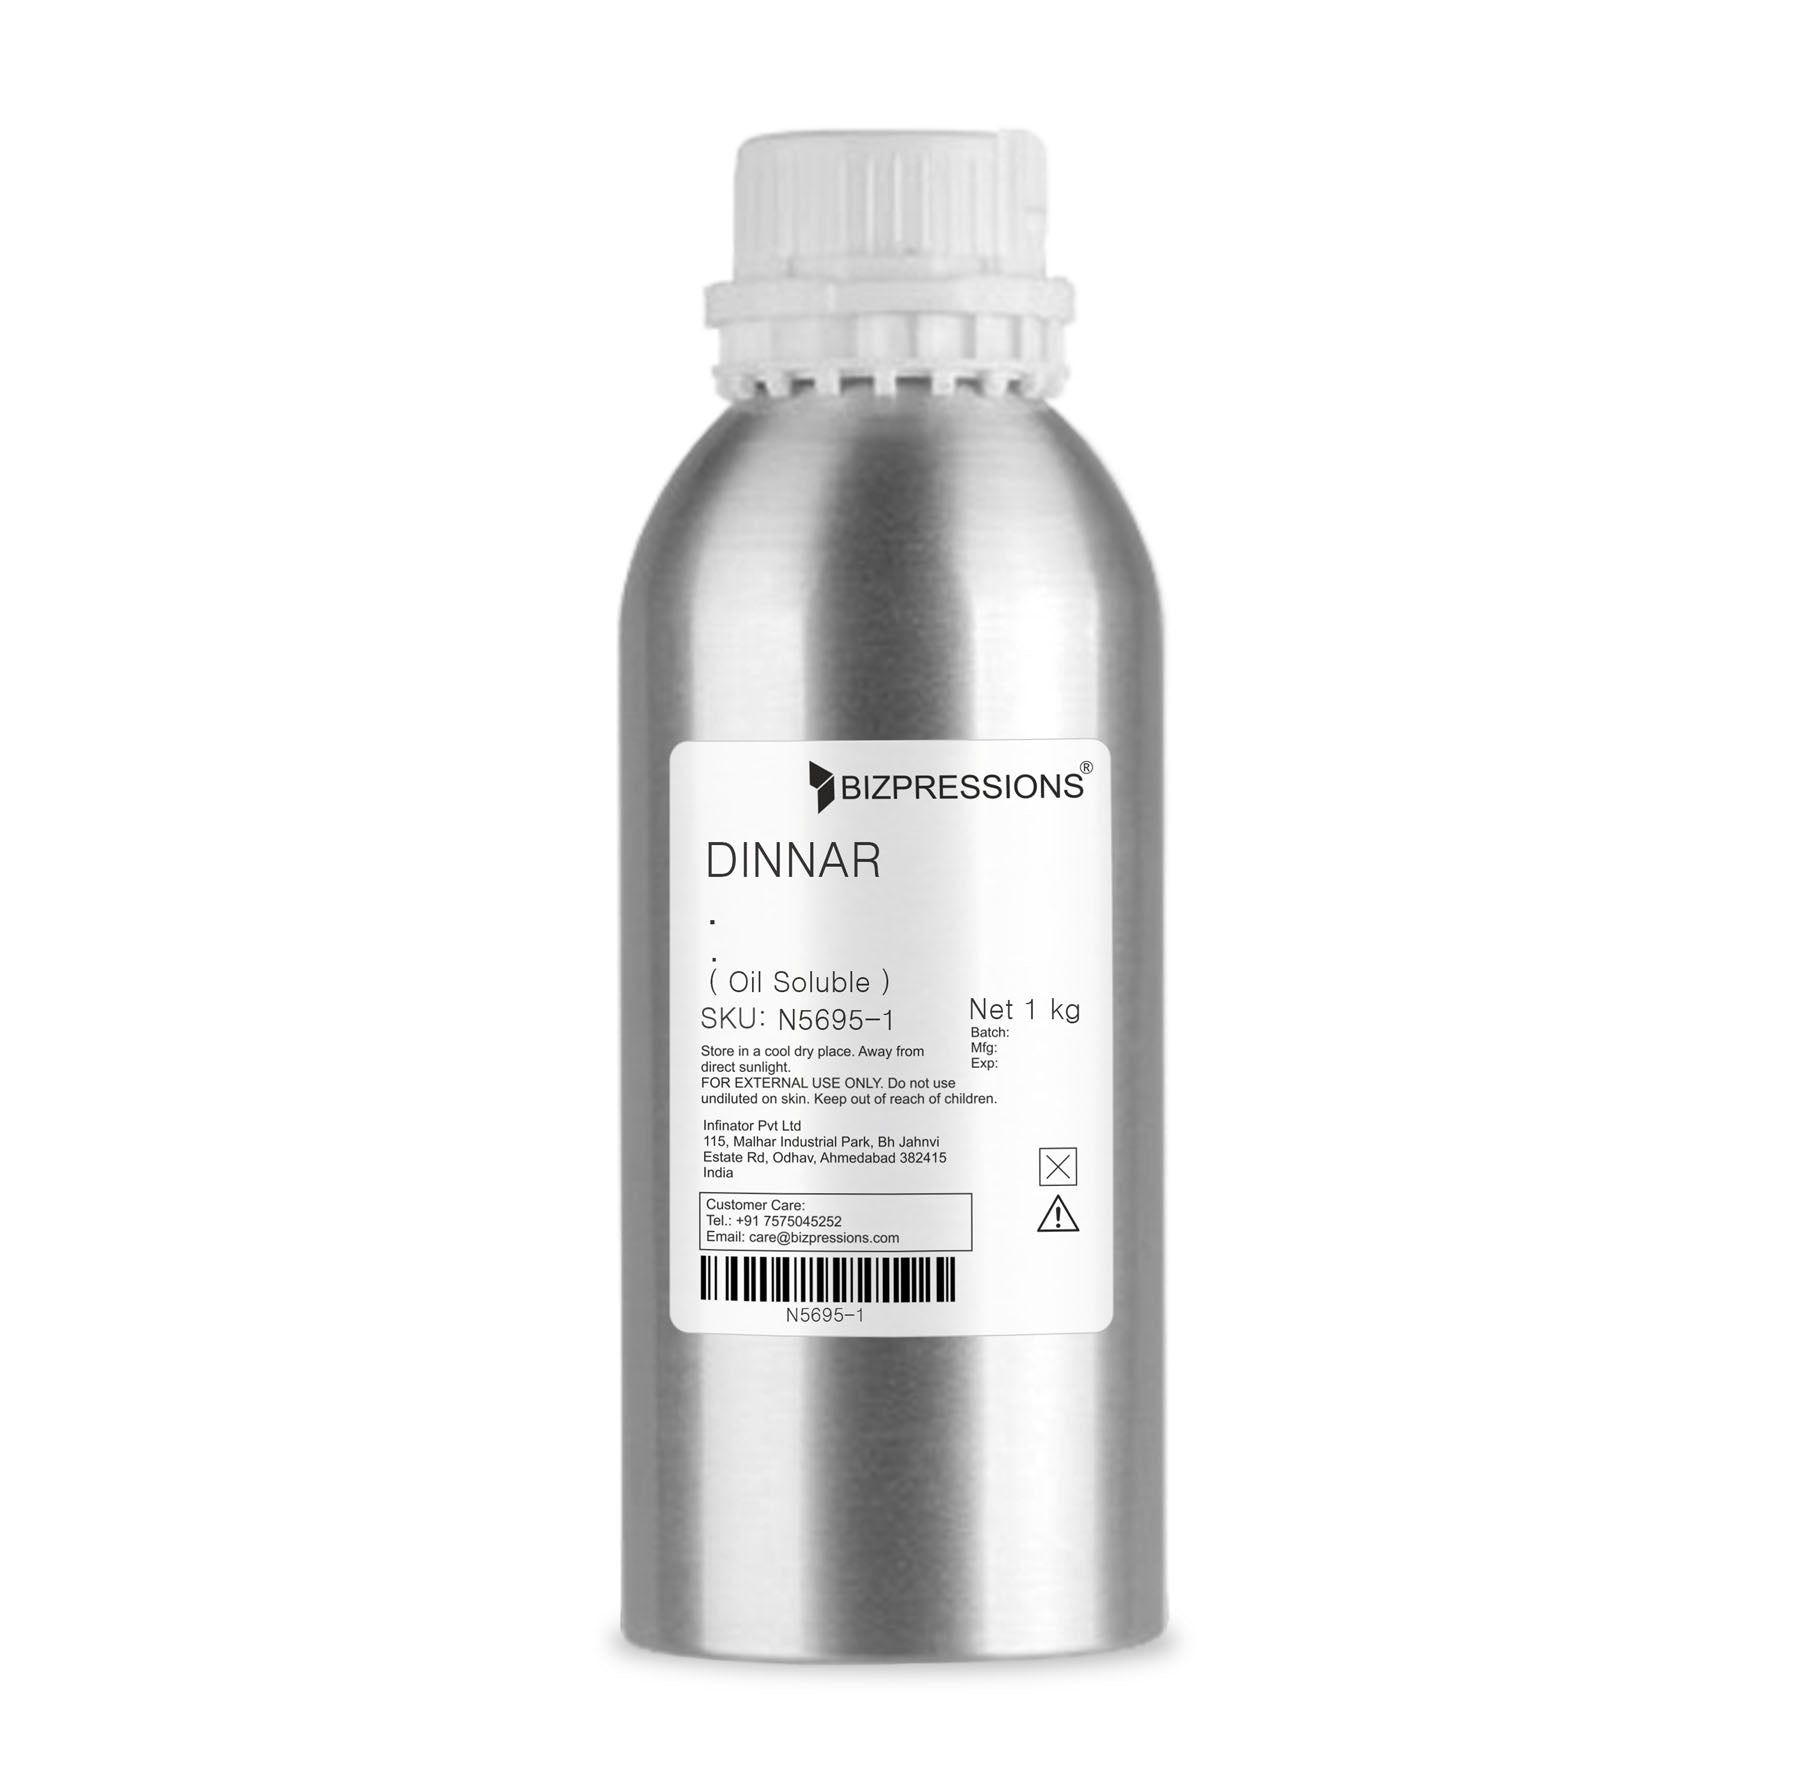 DINNAR - Fragrance ( Oil Soluble ) - 1 kg